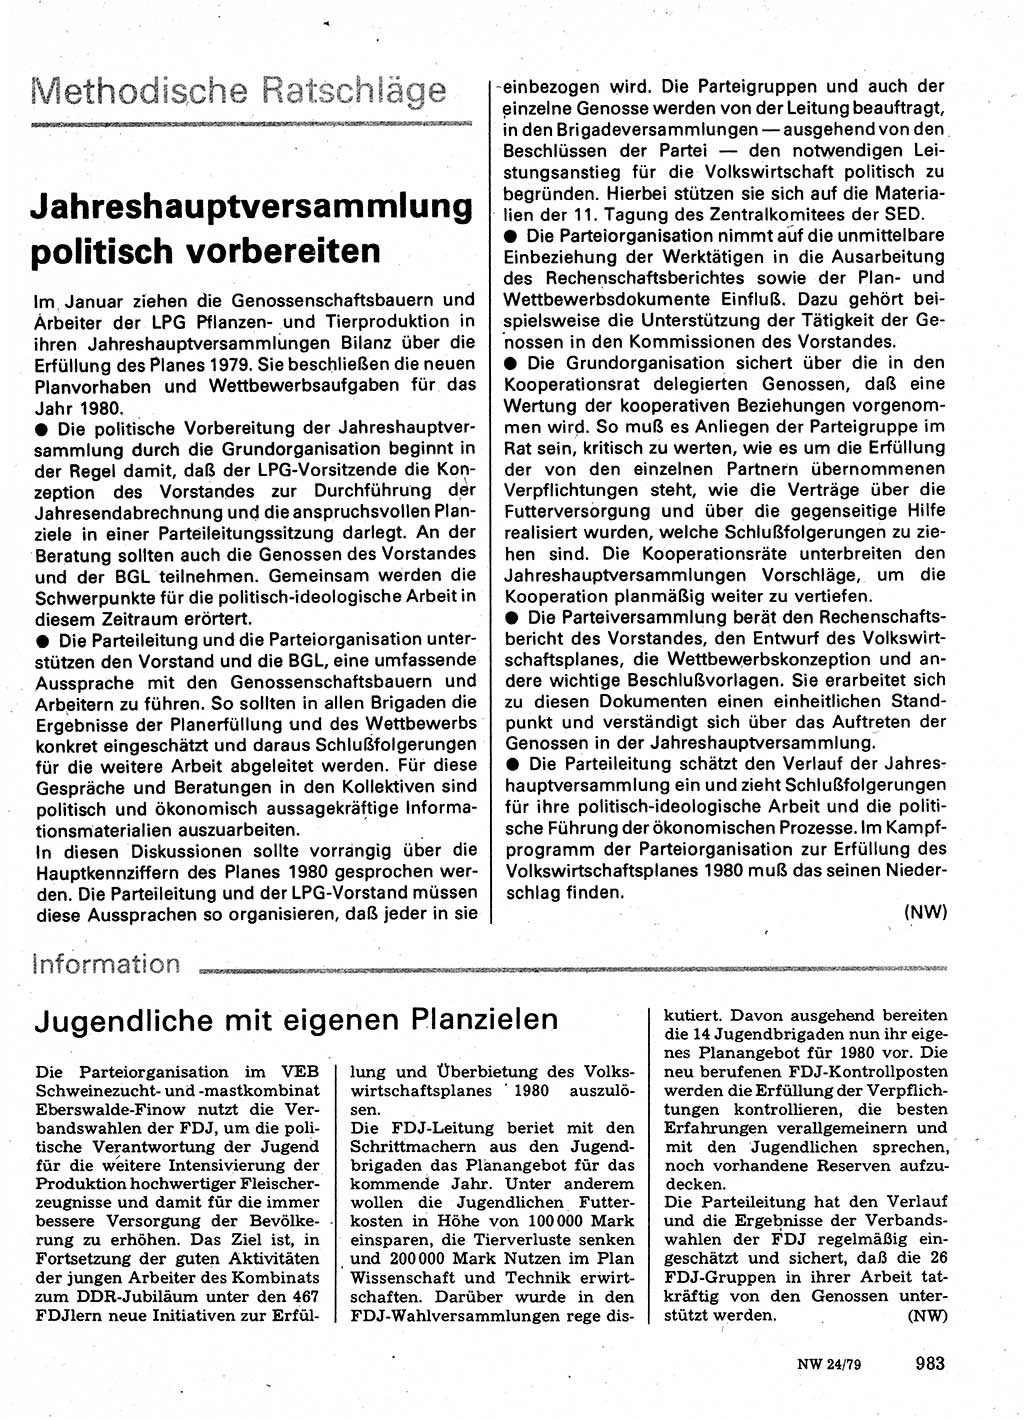 Neuer Weg (NW), Organ des Zentralkomitees (ZK) der SED (Sozialistische Einheitspartei Deutschlands) für Fragen des Parteilebens, 34. Jahrgang [Deutsche Demokratische Republik (DDR)] 1979, Seite 983 (NW ZK SED DDR 1979, S. 983)